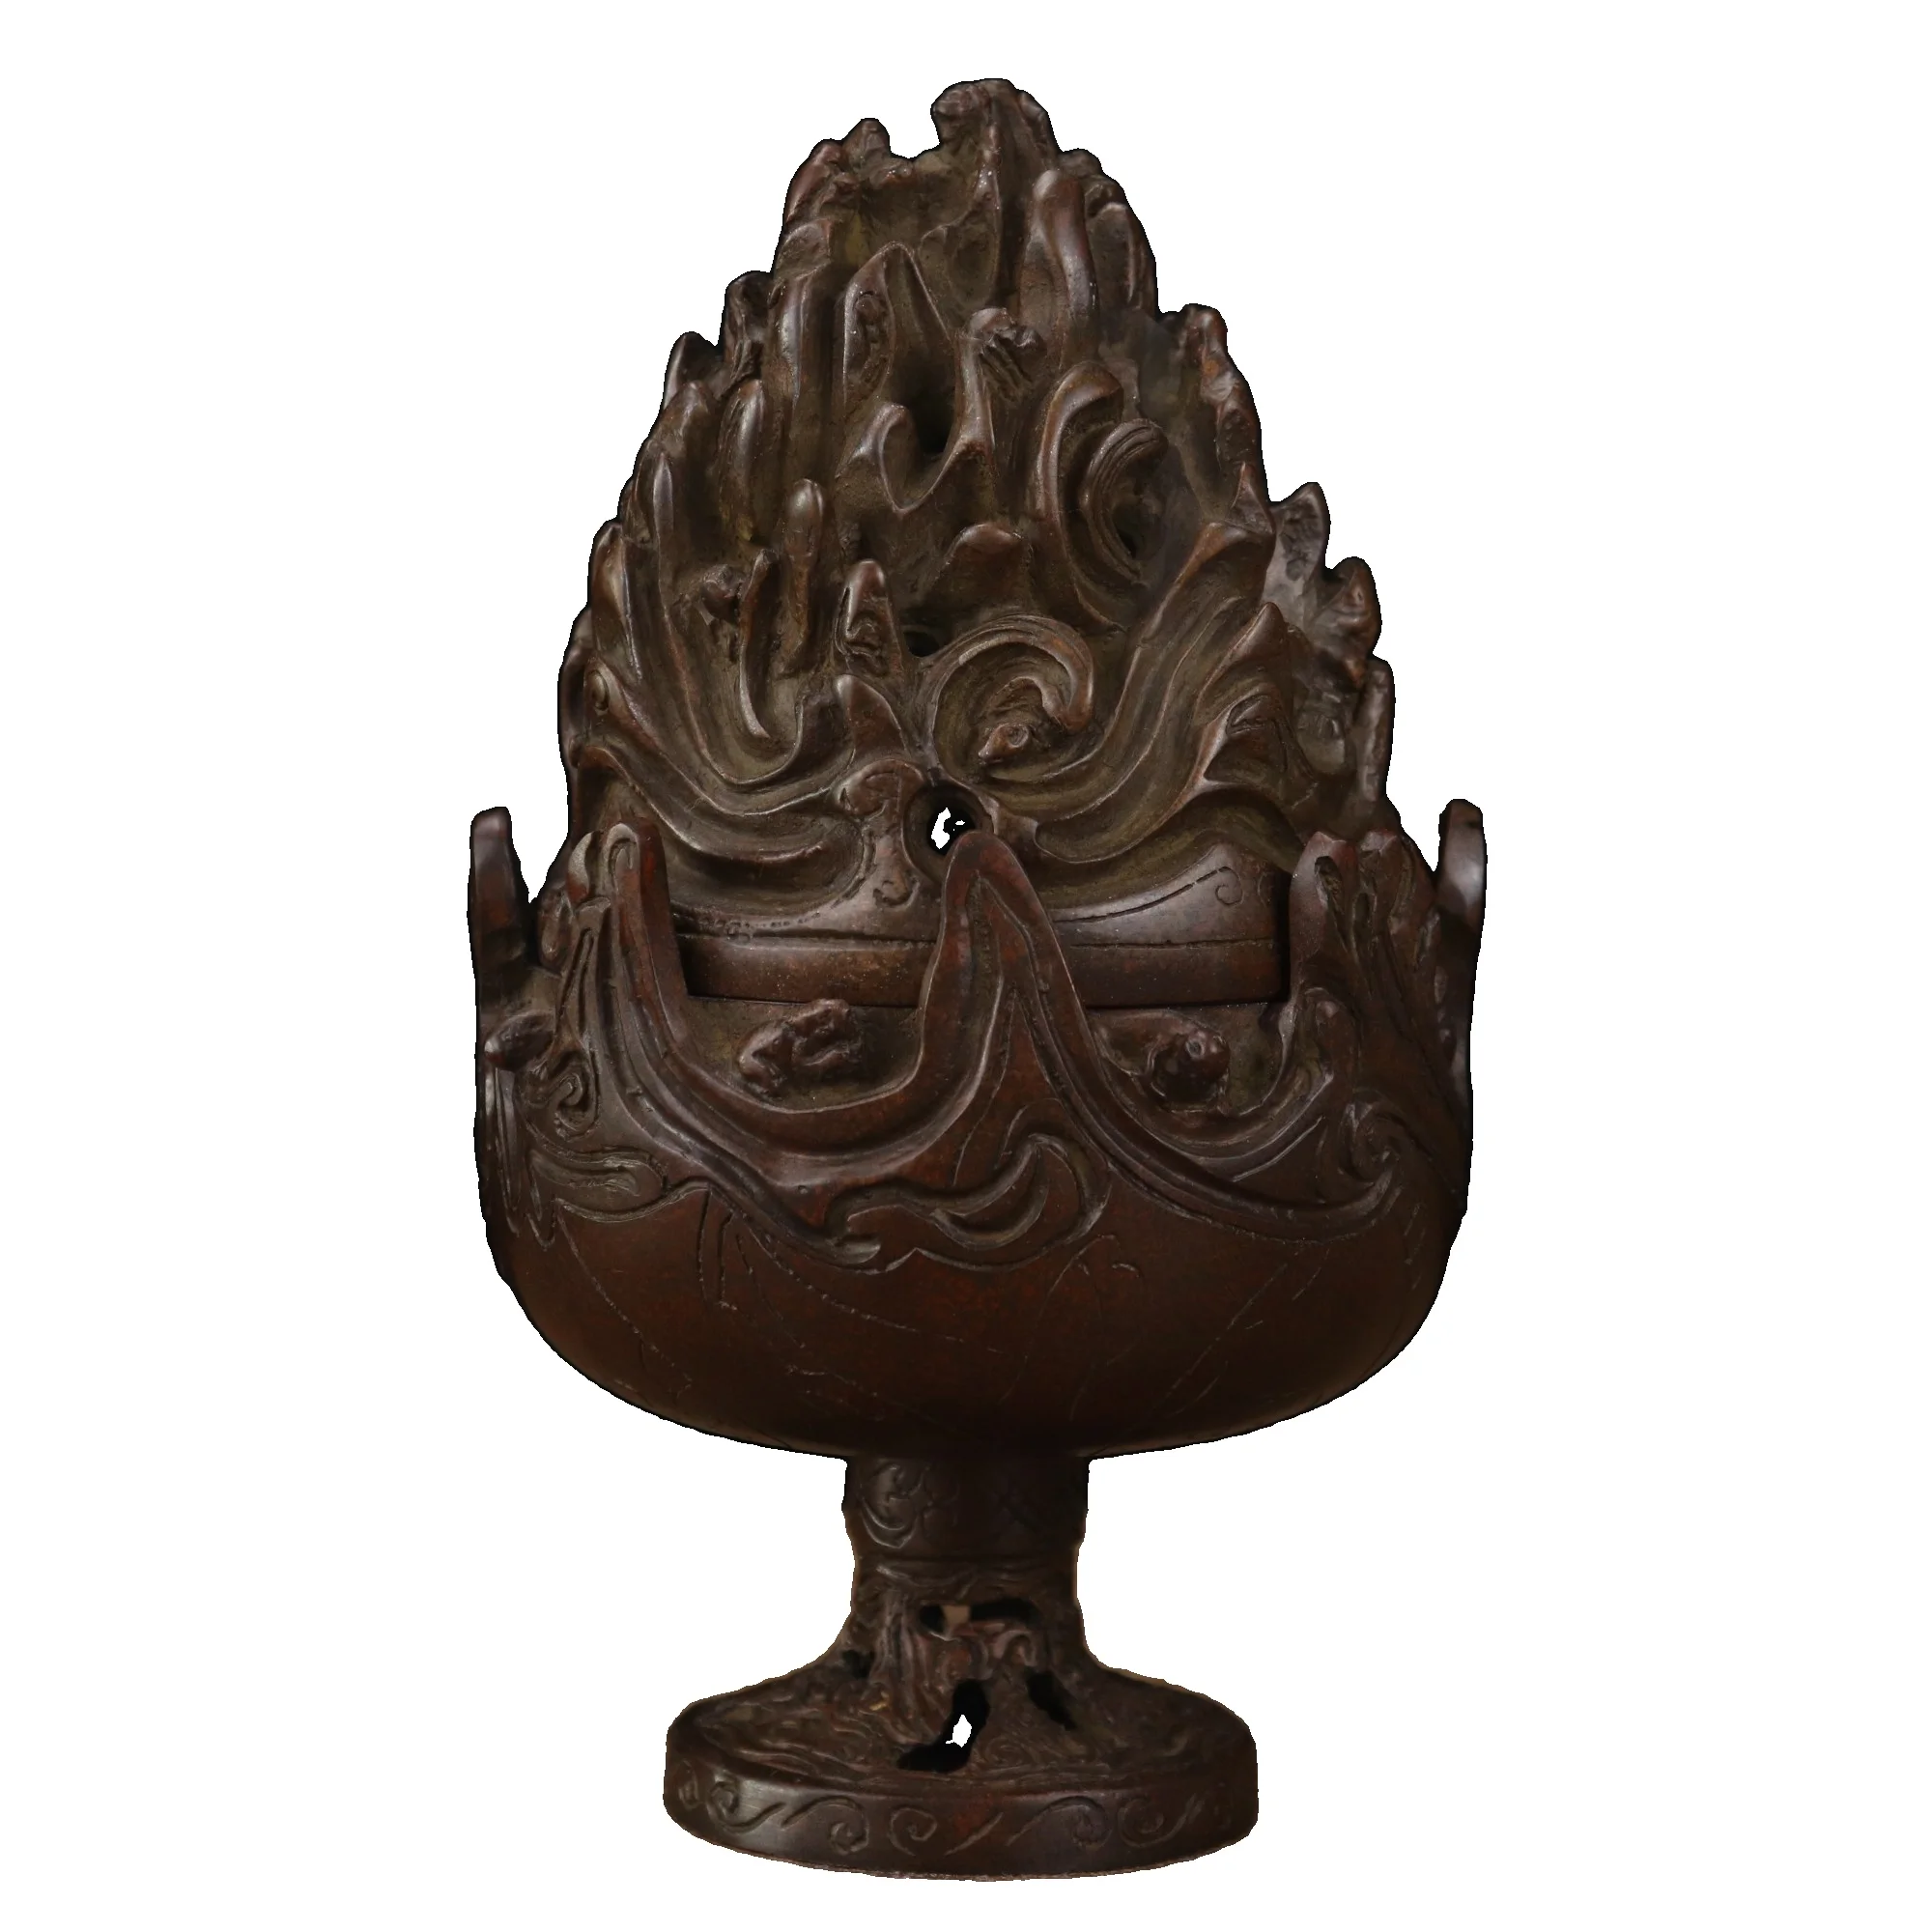 

Laojunlu бронзовая печь династии хань в бошане, имитация античной бронзы, коллекция шедевров в традиционном китайском стиле